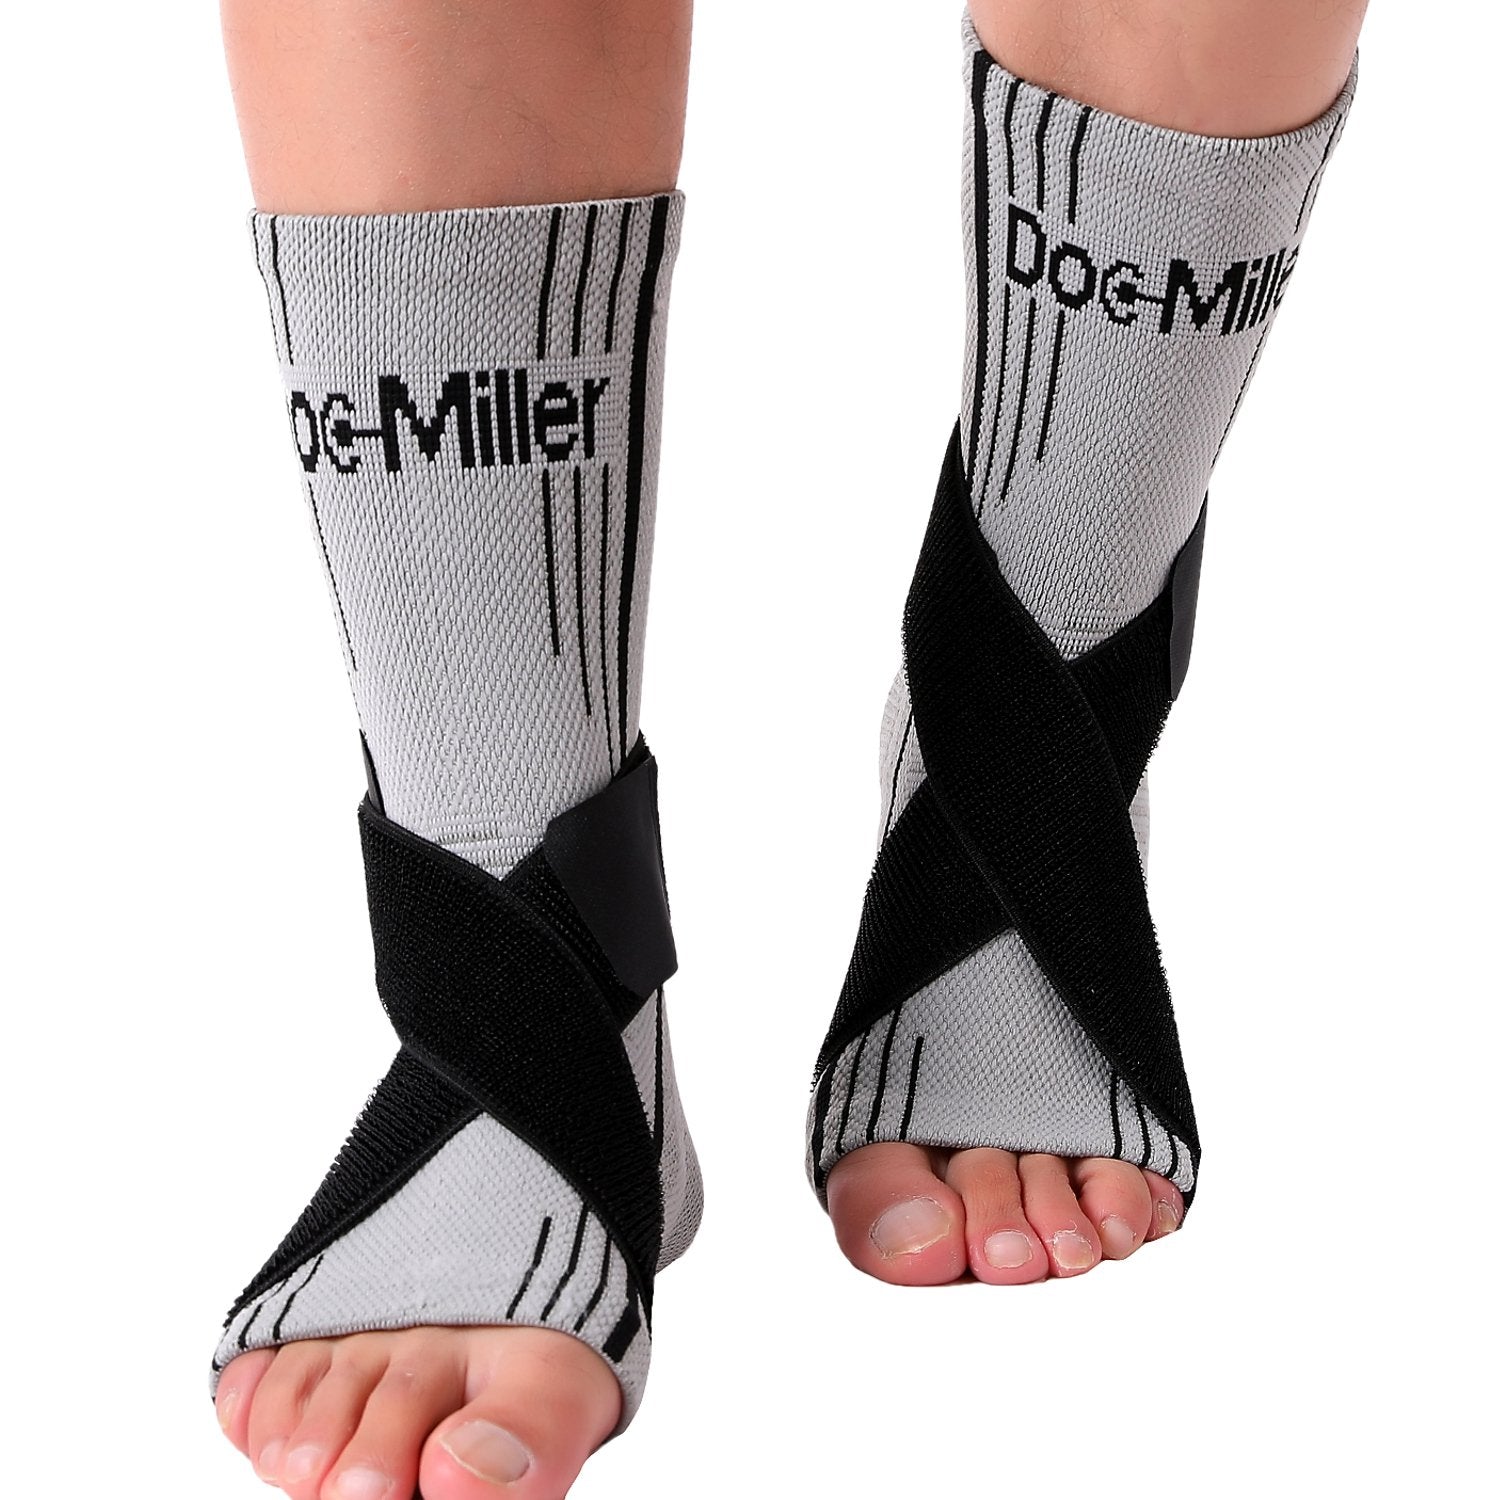 Doc Miller Compression Ankle Brace Socks Plantar Fasciitis Arch